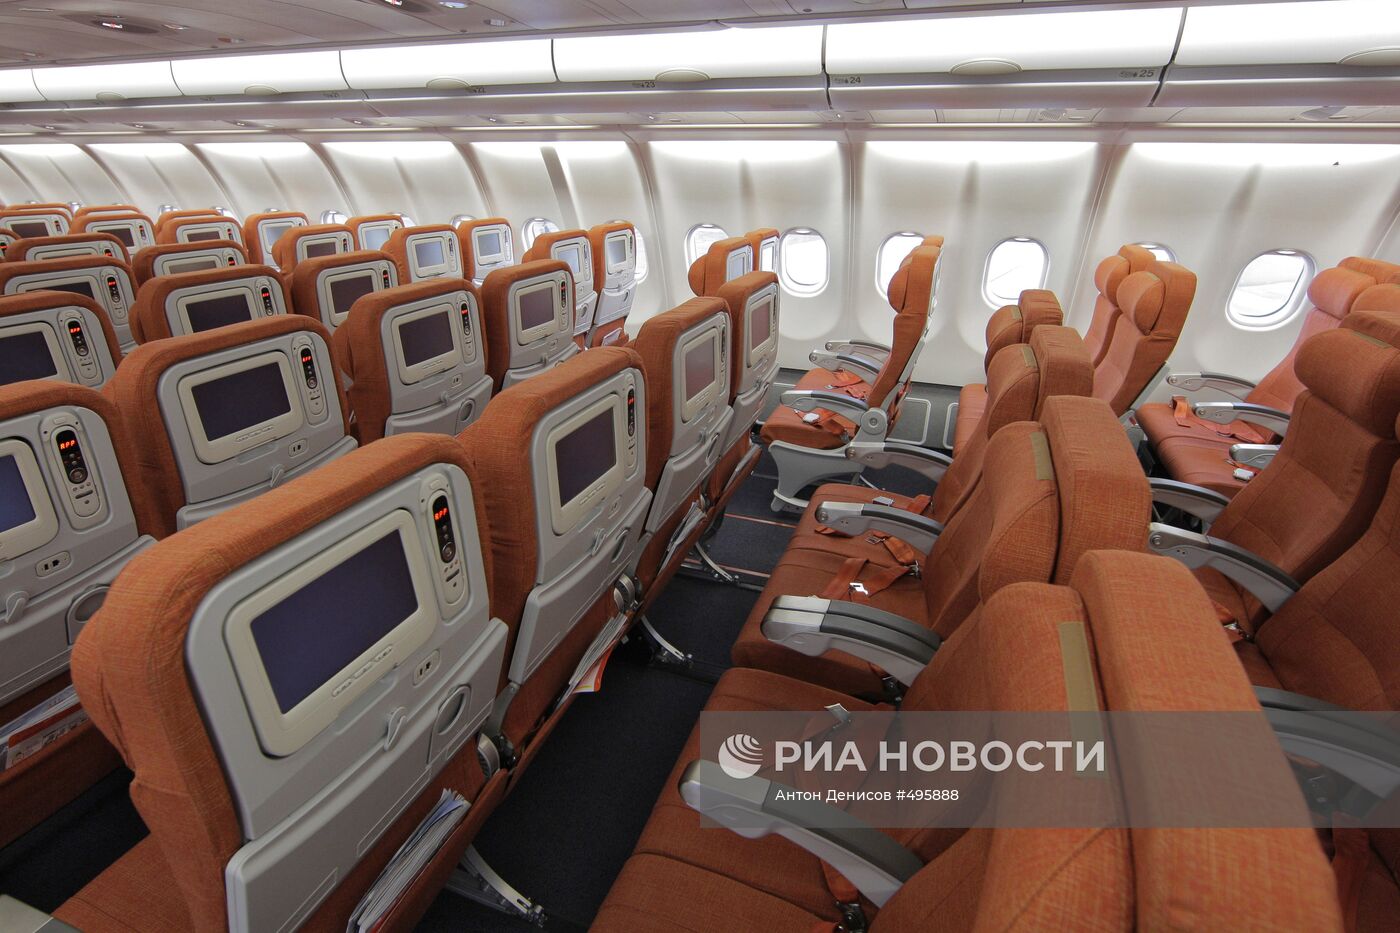 Новый самолет компании ОАО "Аэрофлот" А330-300 альянса Sky Team